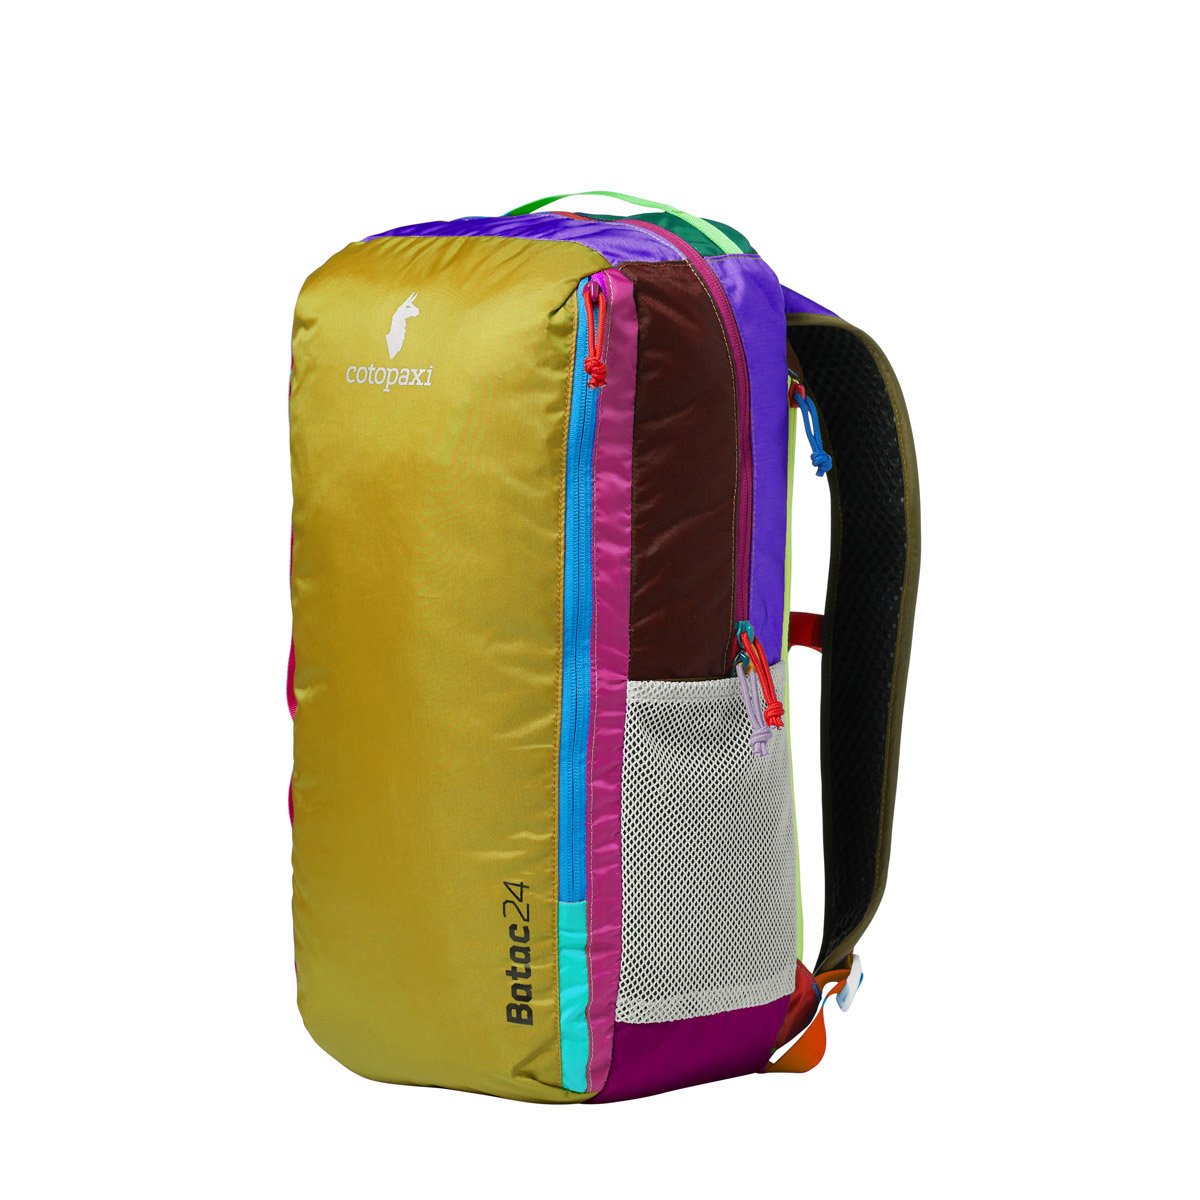 Cotopaxi Batac 24L Backpack - Del Día コトパクシ バタック 24L バックパック デルディア